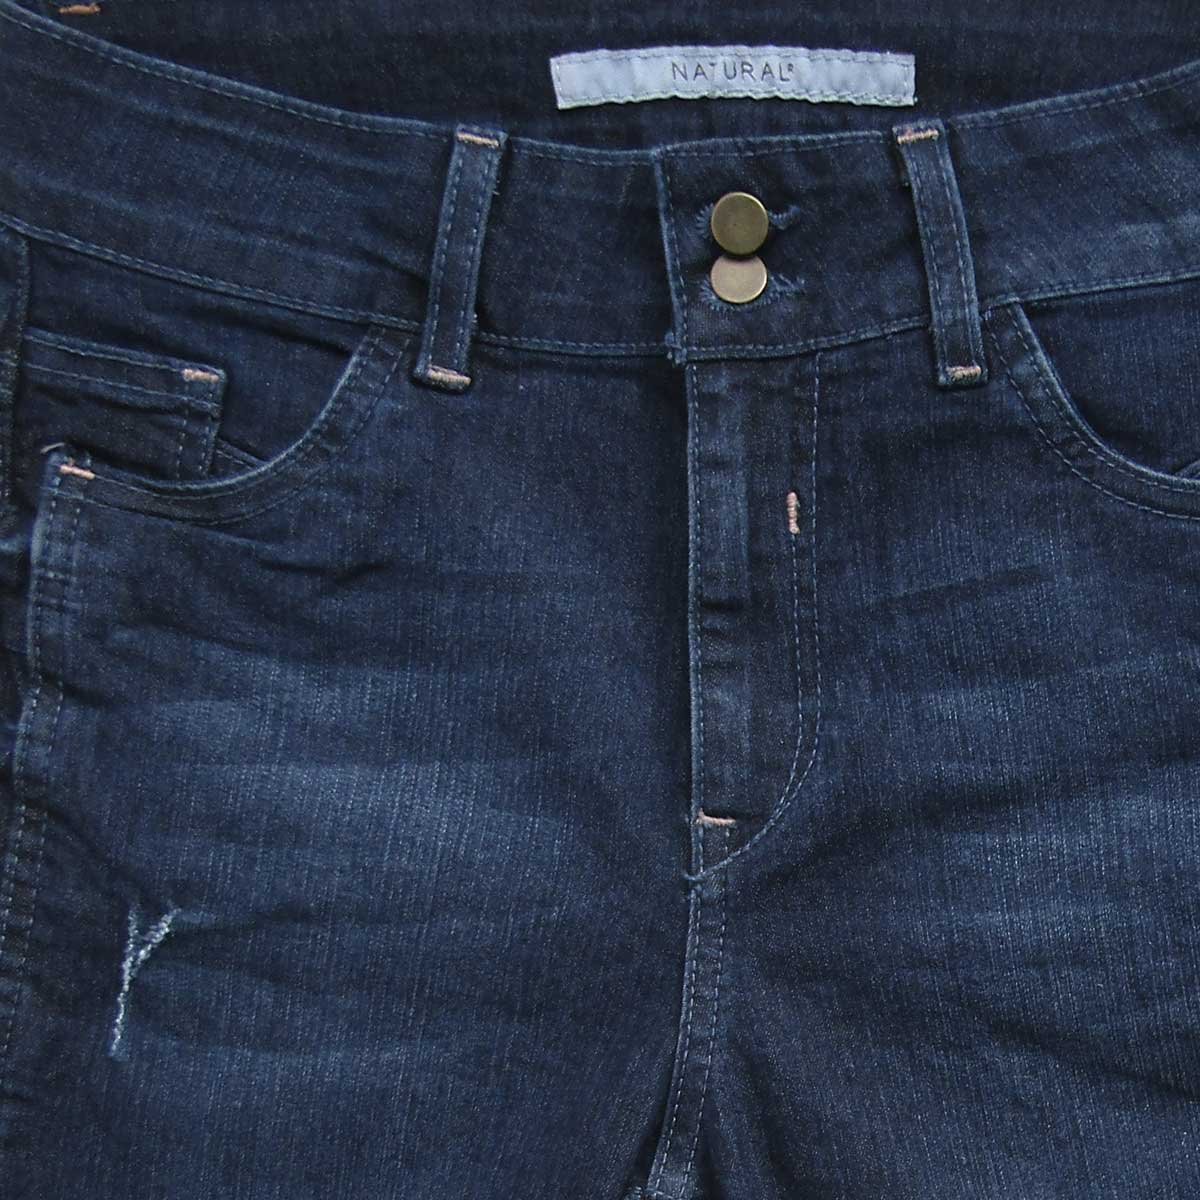 Jeans Corte Recto Pretina Semi Ancha Natural